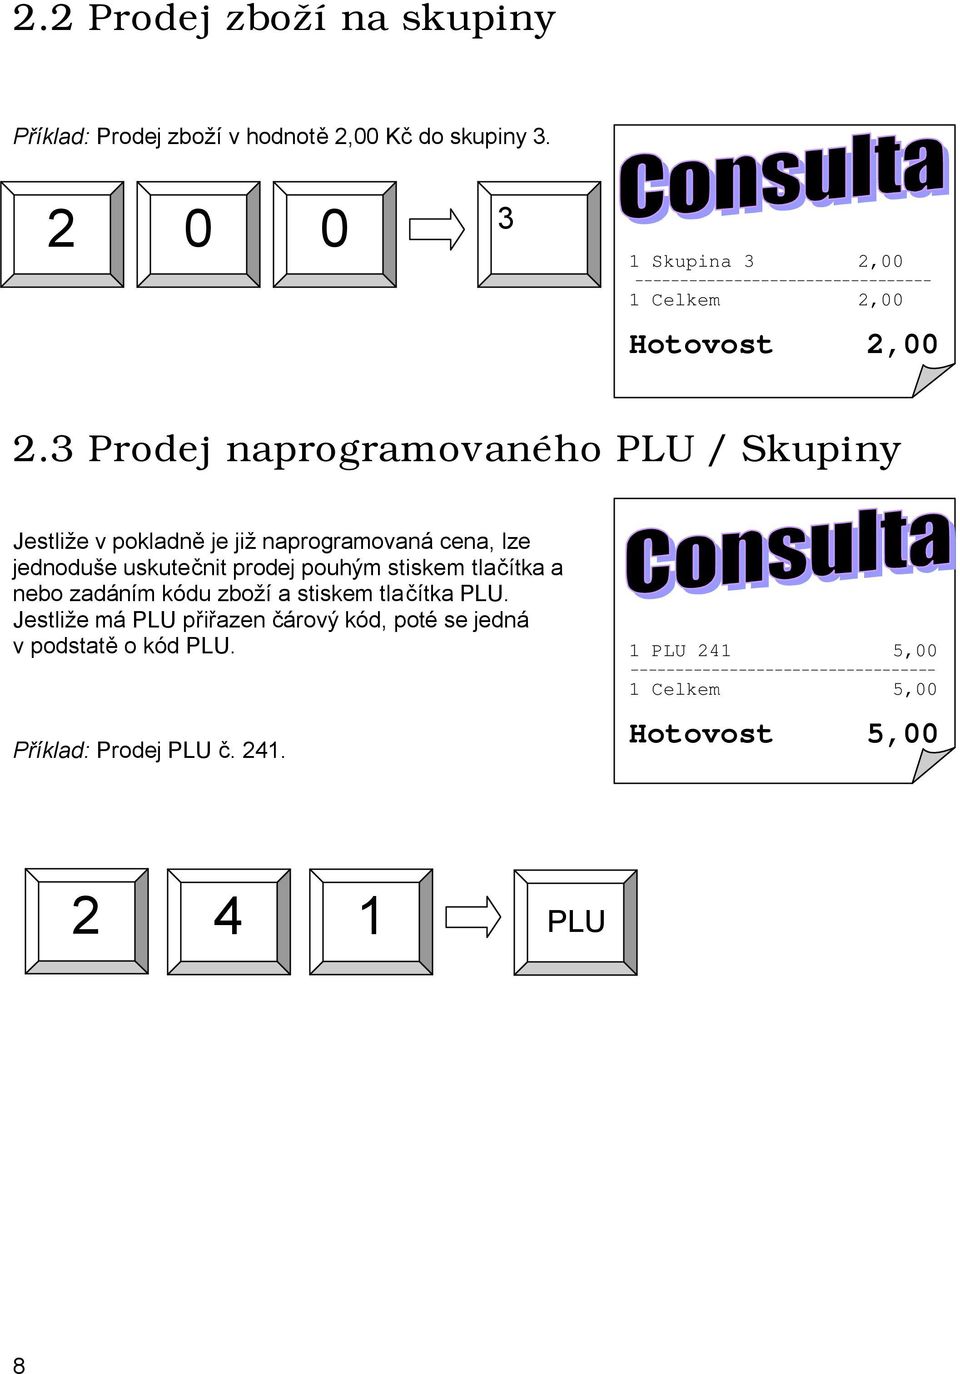 3 Prodej naprogramovaného PLU / Skupiny Jestliže v pokladně je již naprogramovaná cena, lze jednoduše uskutečnit prodej pouhým stiskem